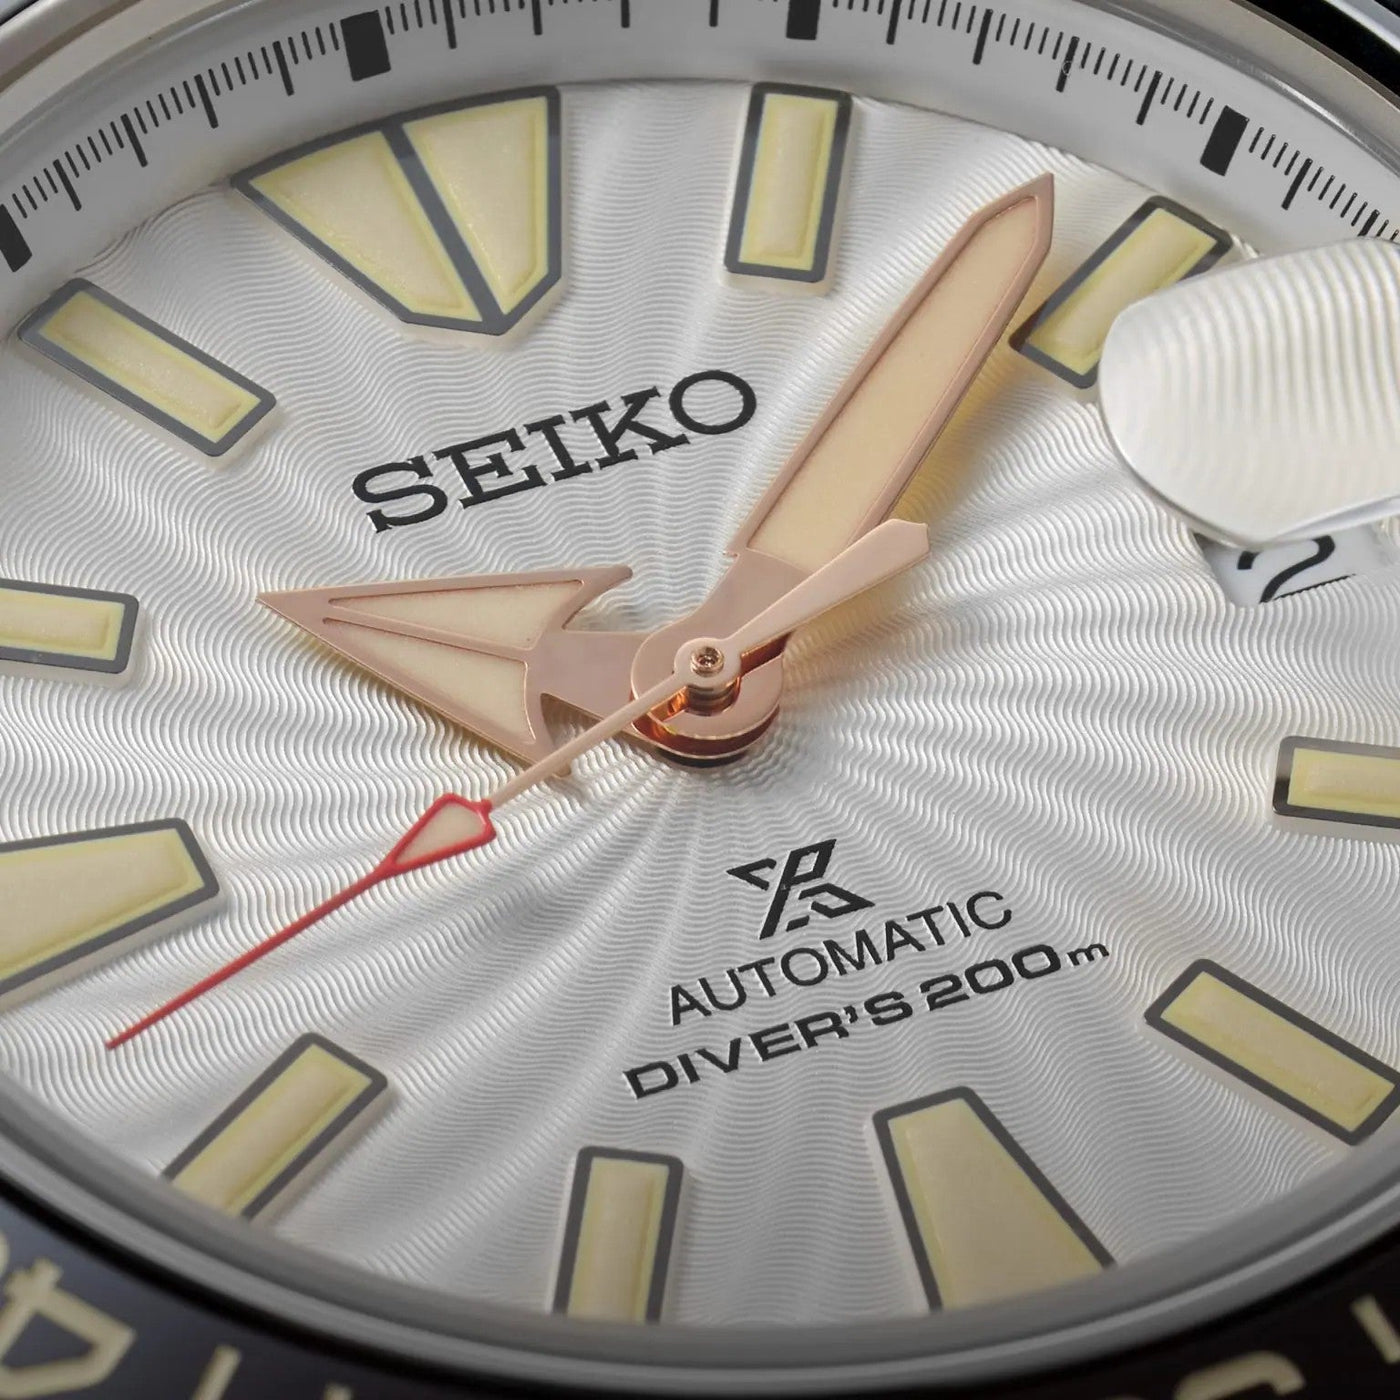 Seiko (ไซโก) นาฬิกาข้อมือ Prospex Thai Elephant Limited Edition รุ่น SRPK57K ระบบอัตโนมัติ ขนาดตัวเรือน 43.80 มม.